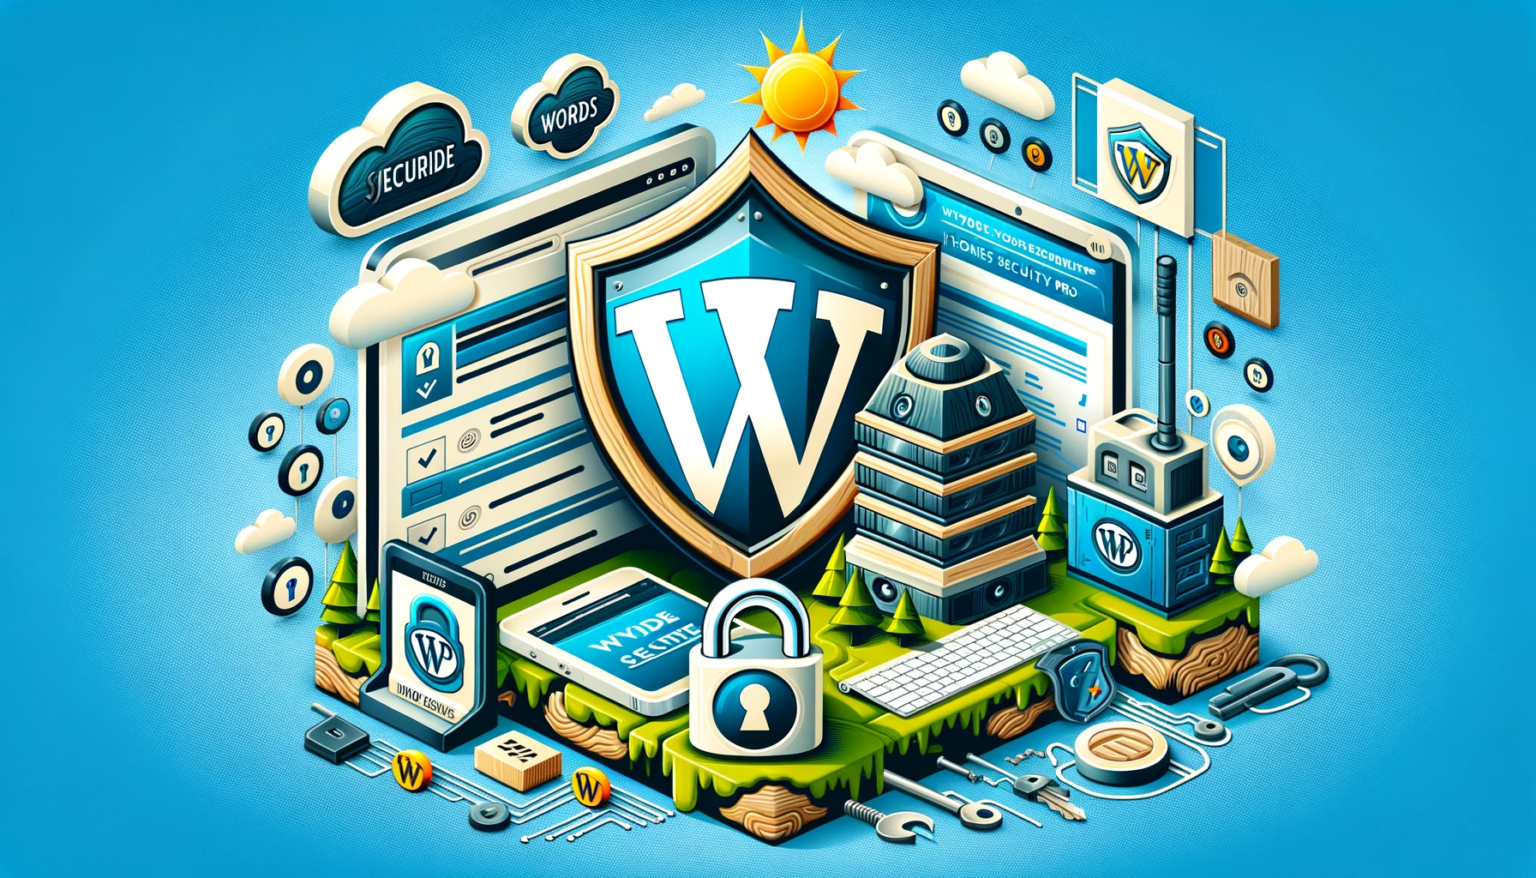 Securite-WordPress-Astuces-pour-un-Site-Protege